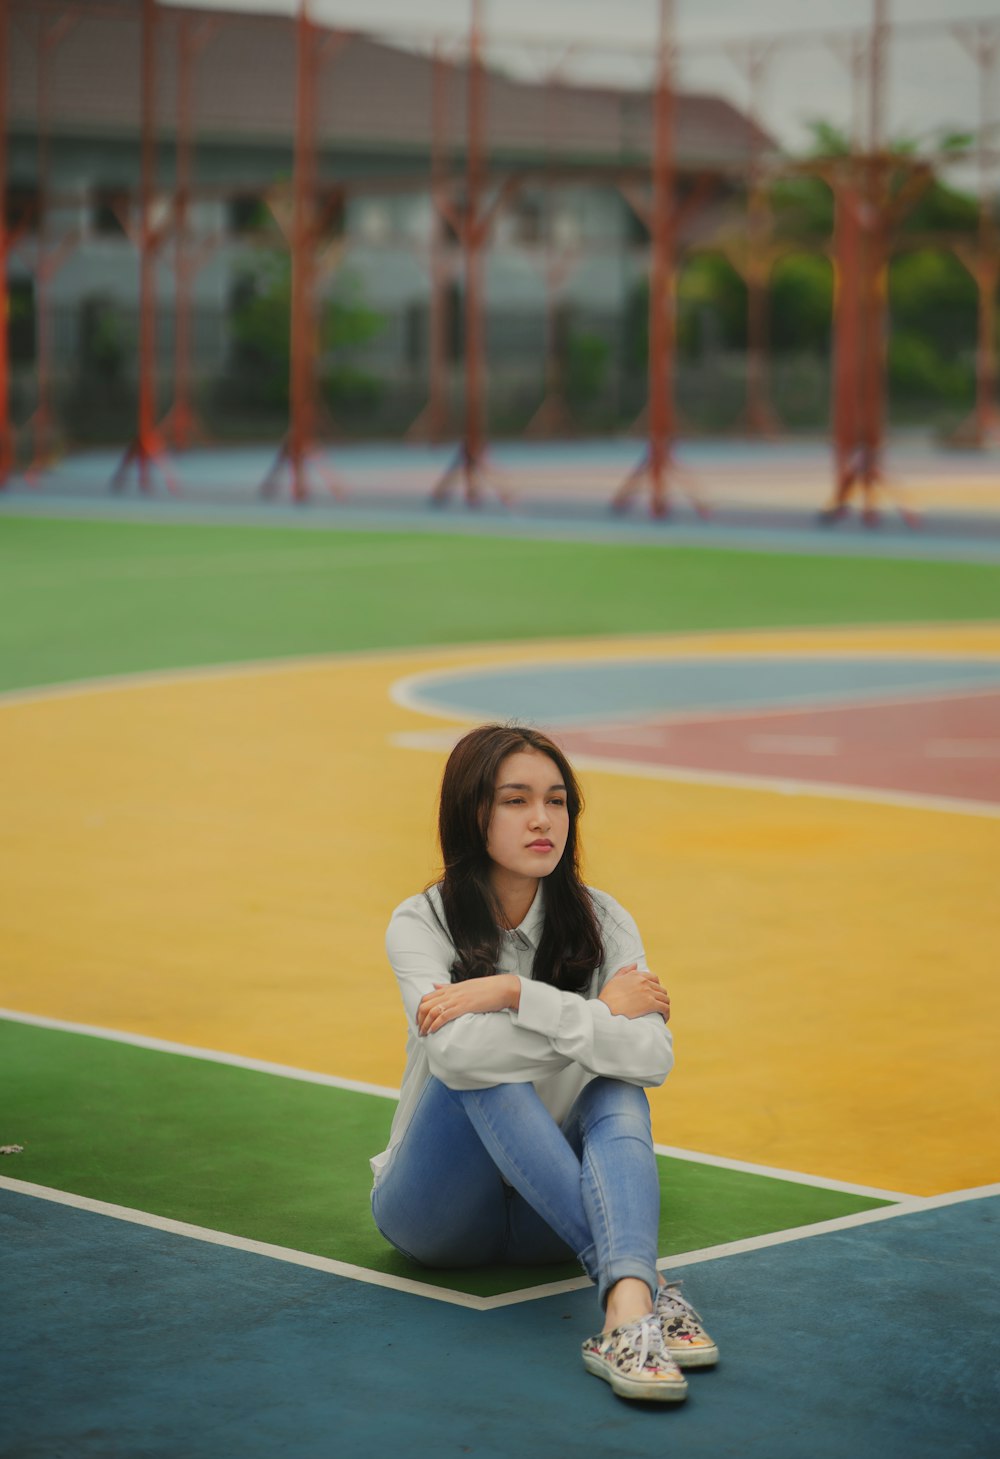 Una mujer sentada en una cancha de baloncesto con los brazos cruzados